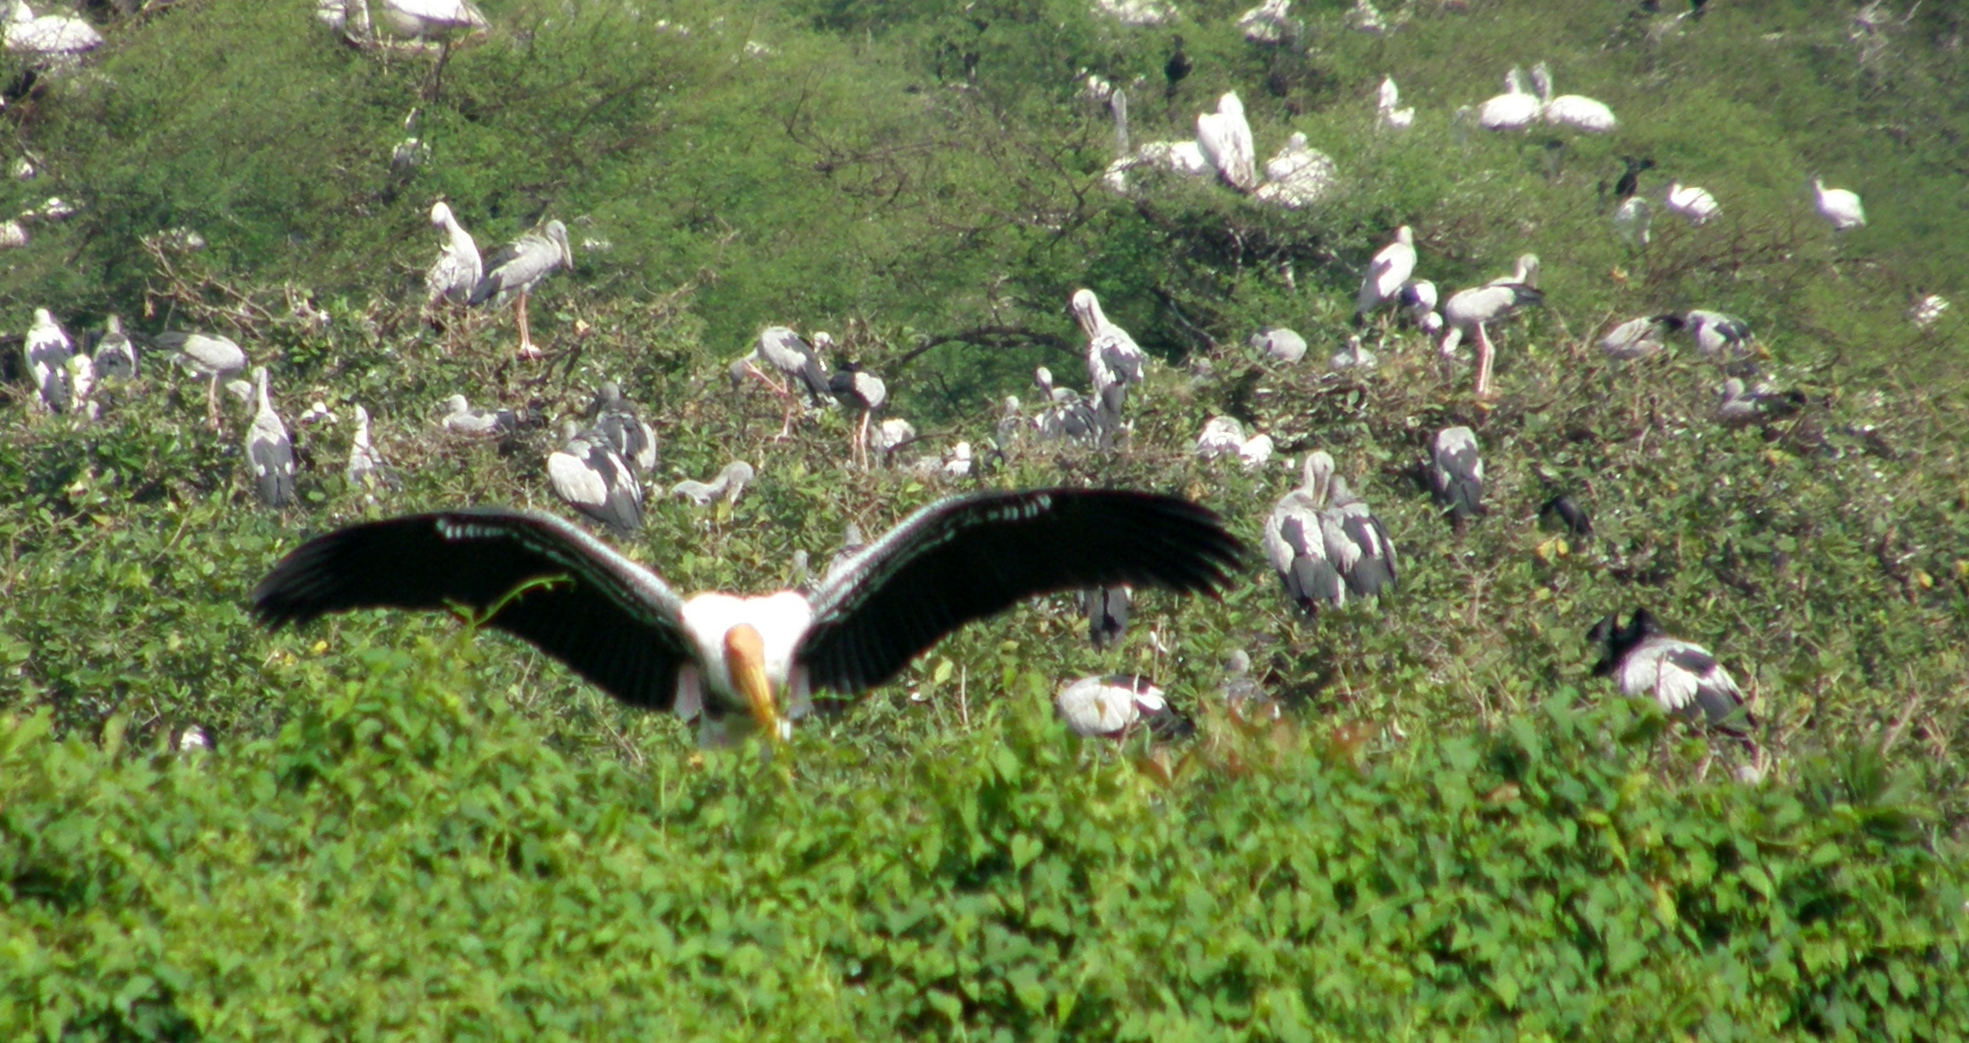 Bang Lang bird sanctuary